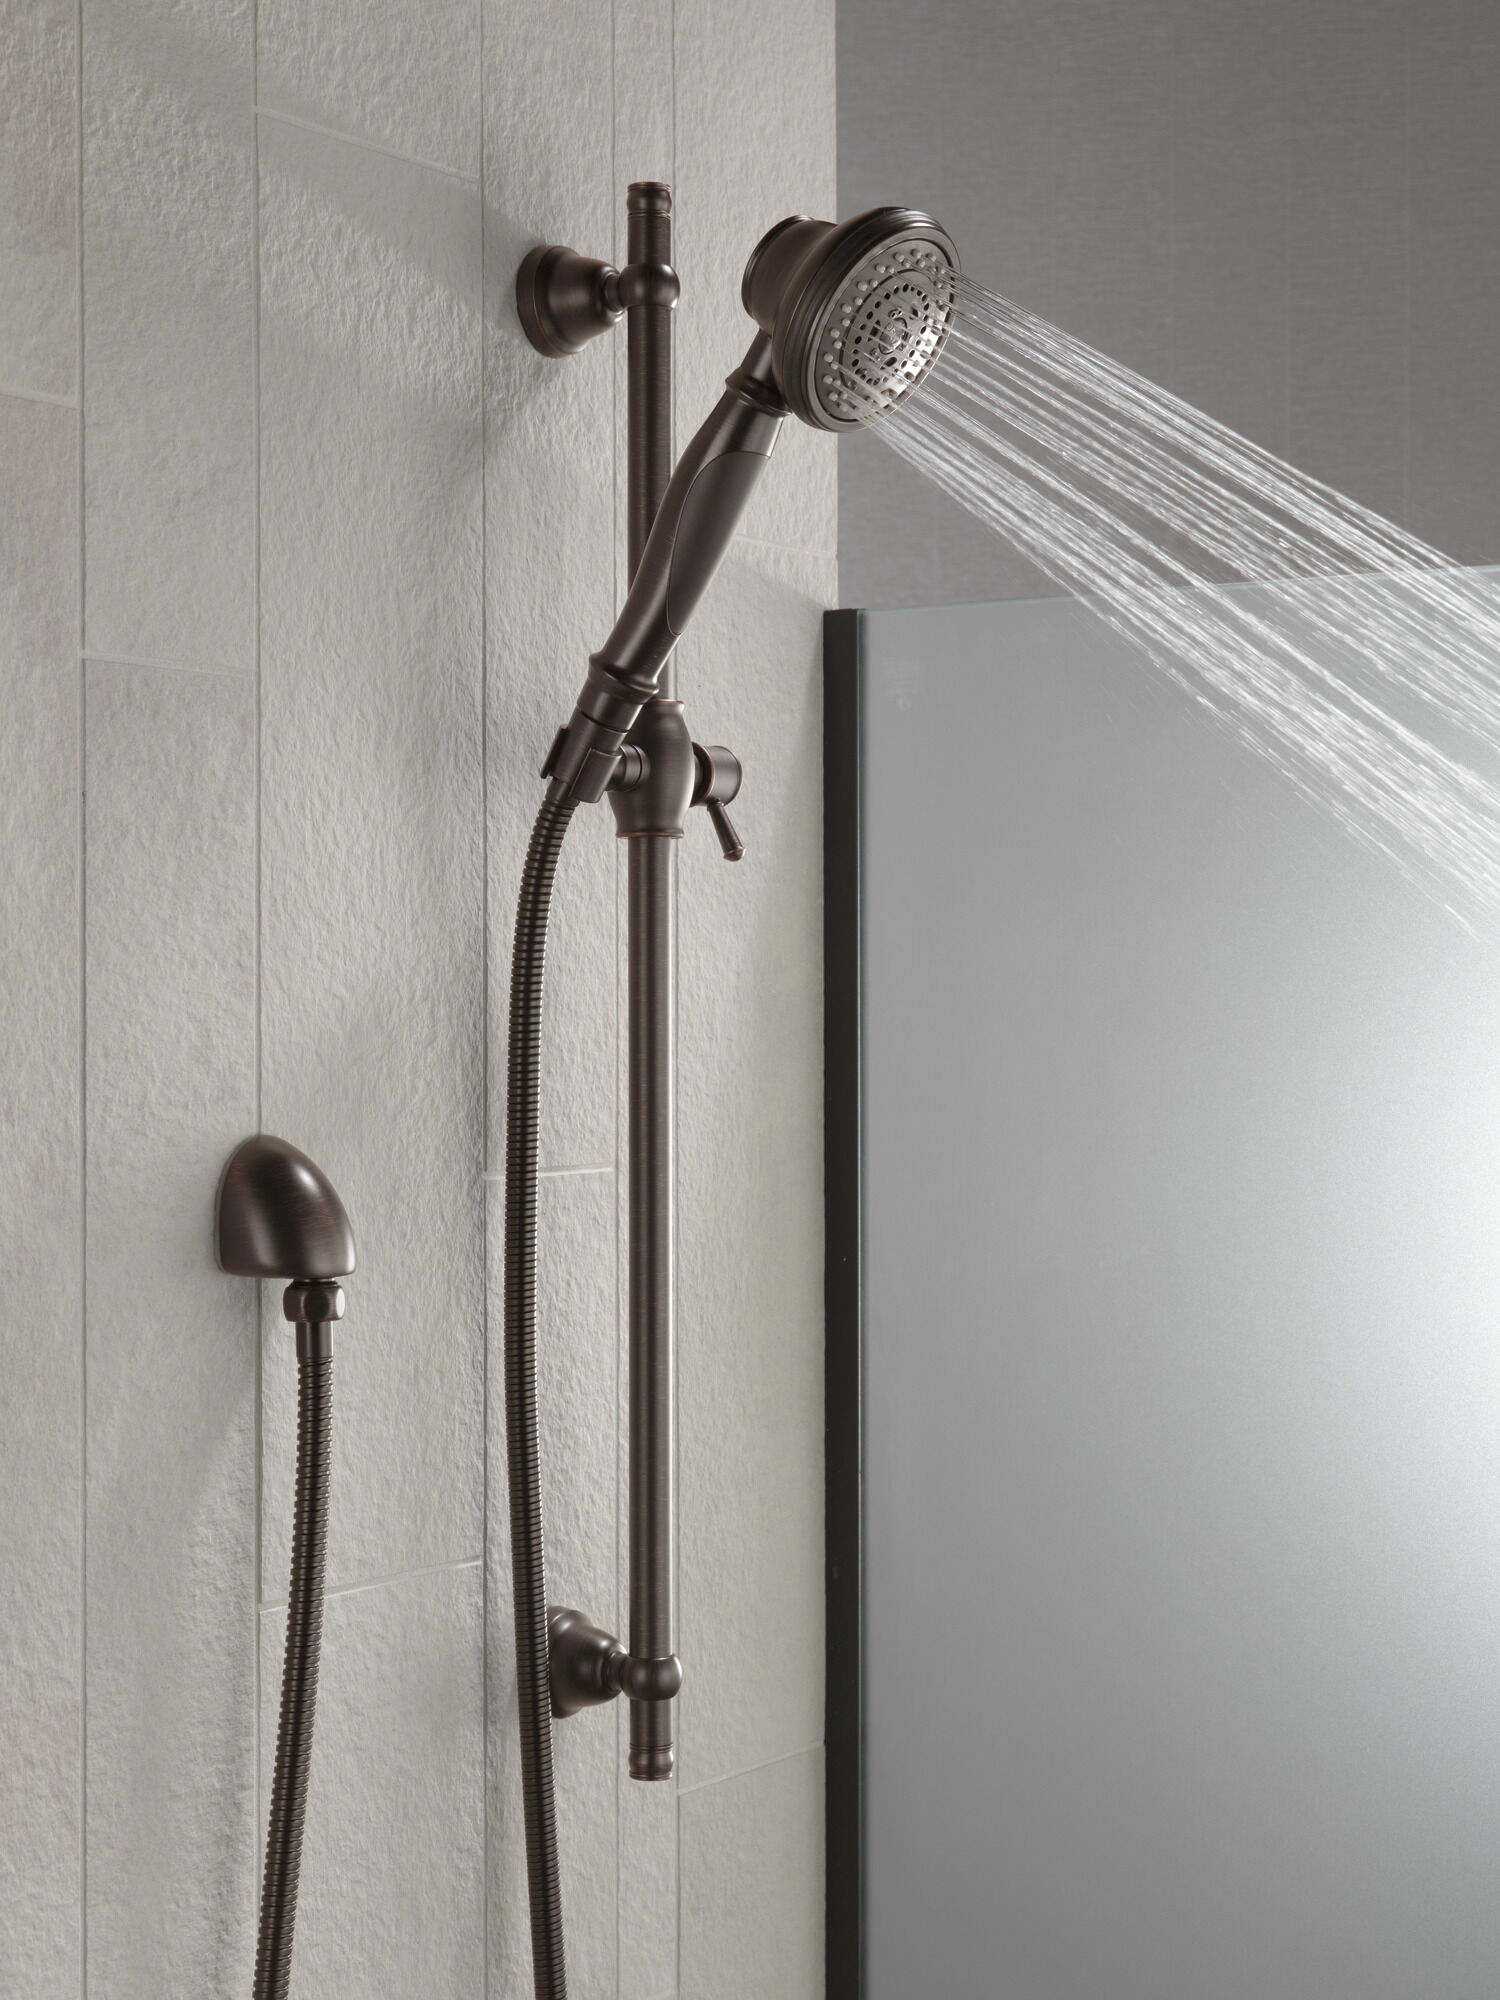 Premium 3-Setting Slide Bar Hand Shower in Venetian Bronze